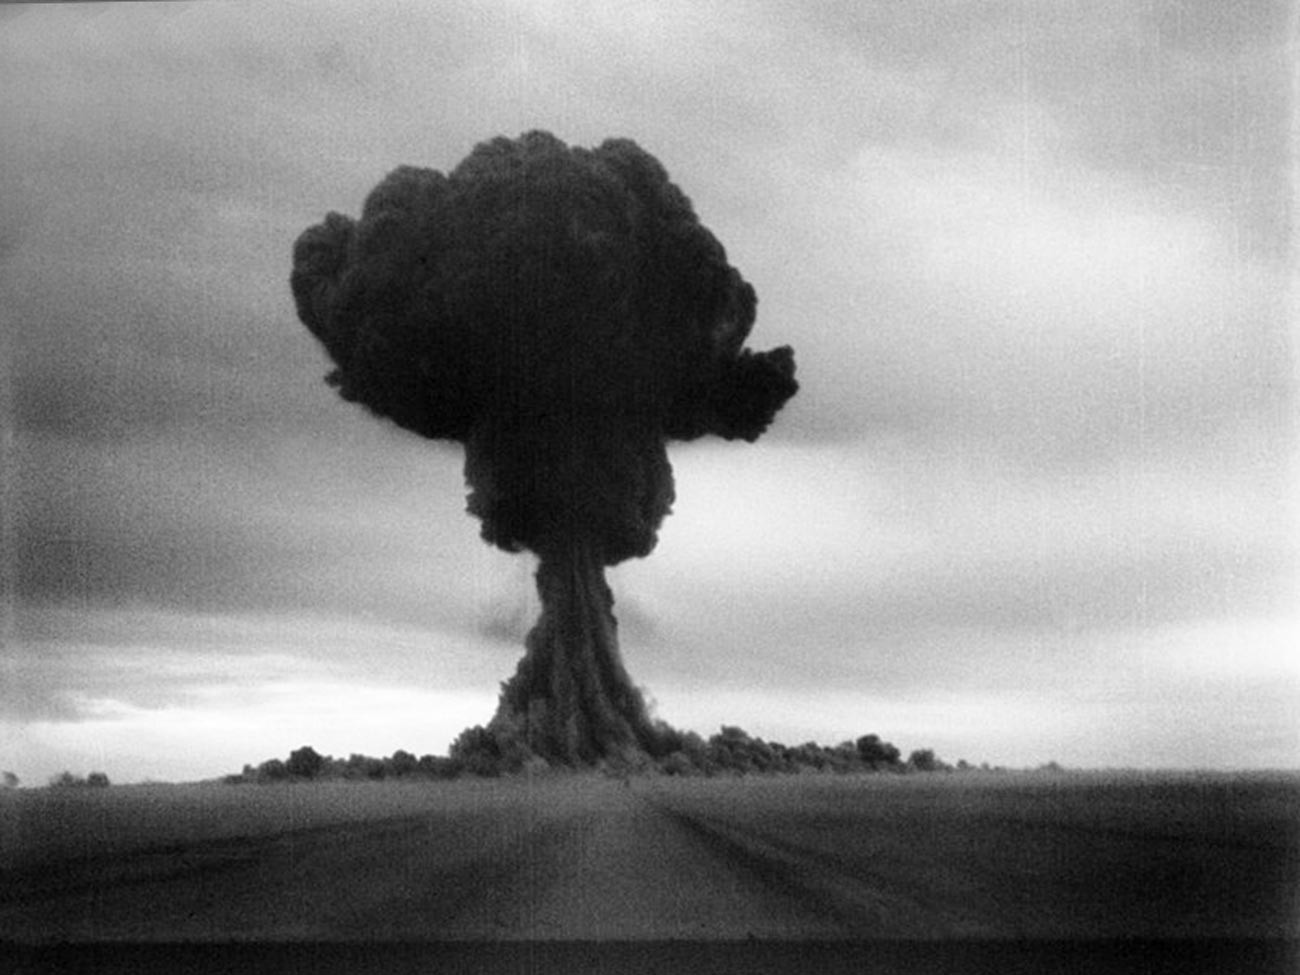 ソビエトの原子爆弾の最初のテスト